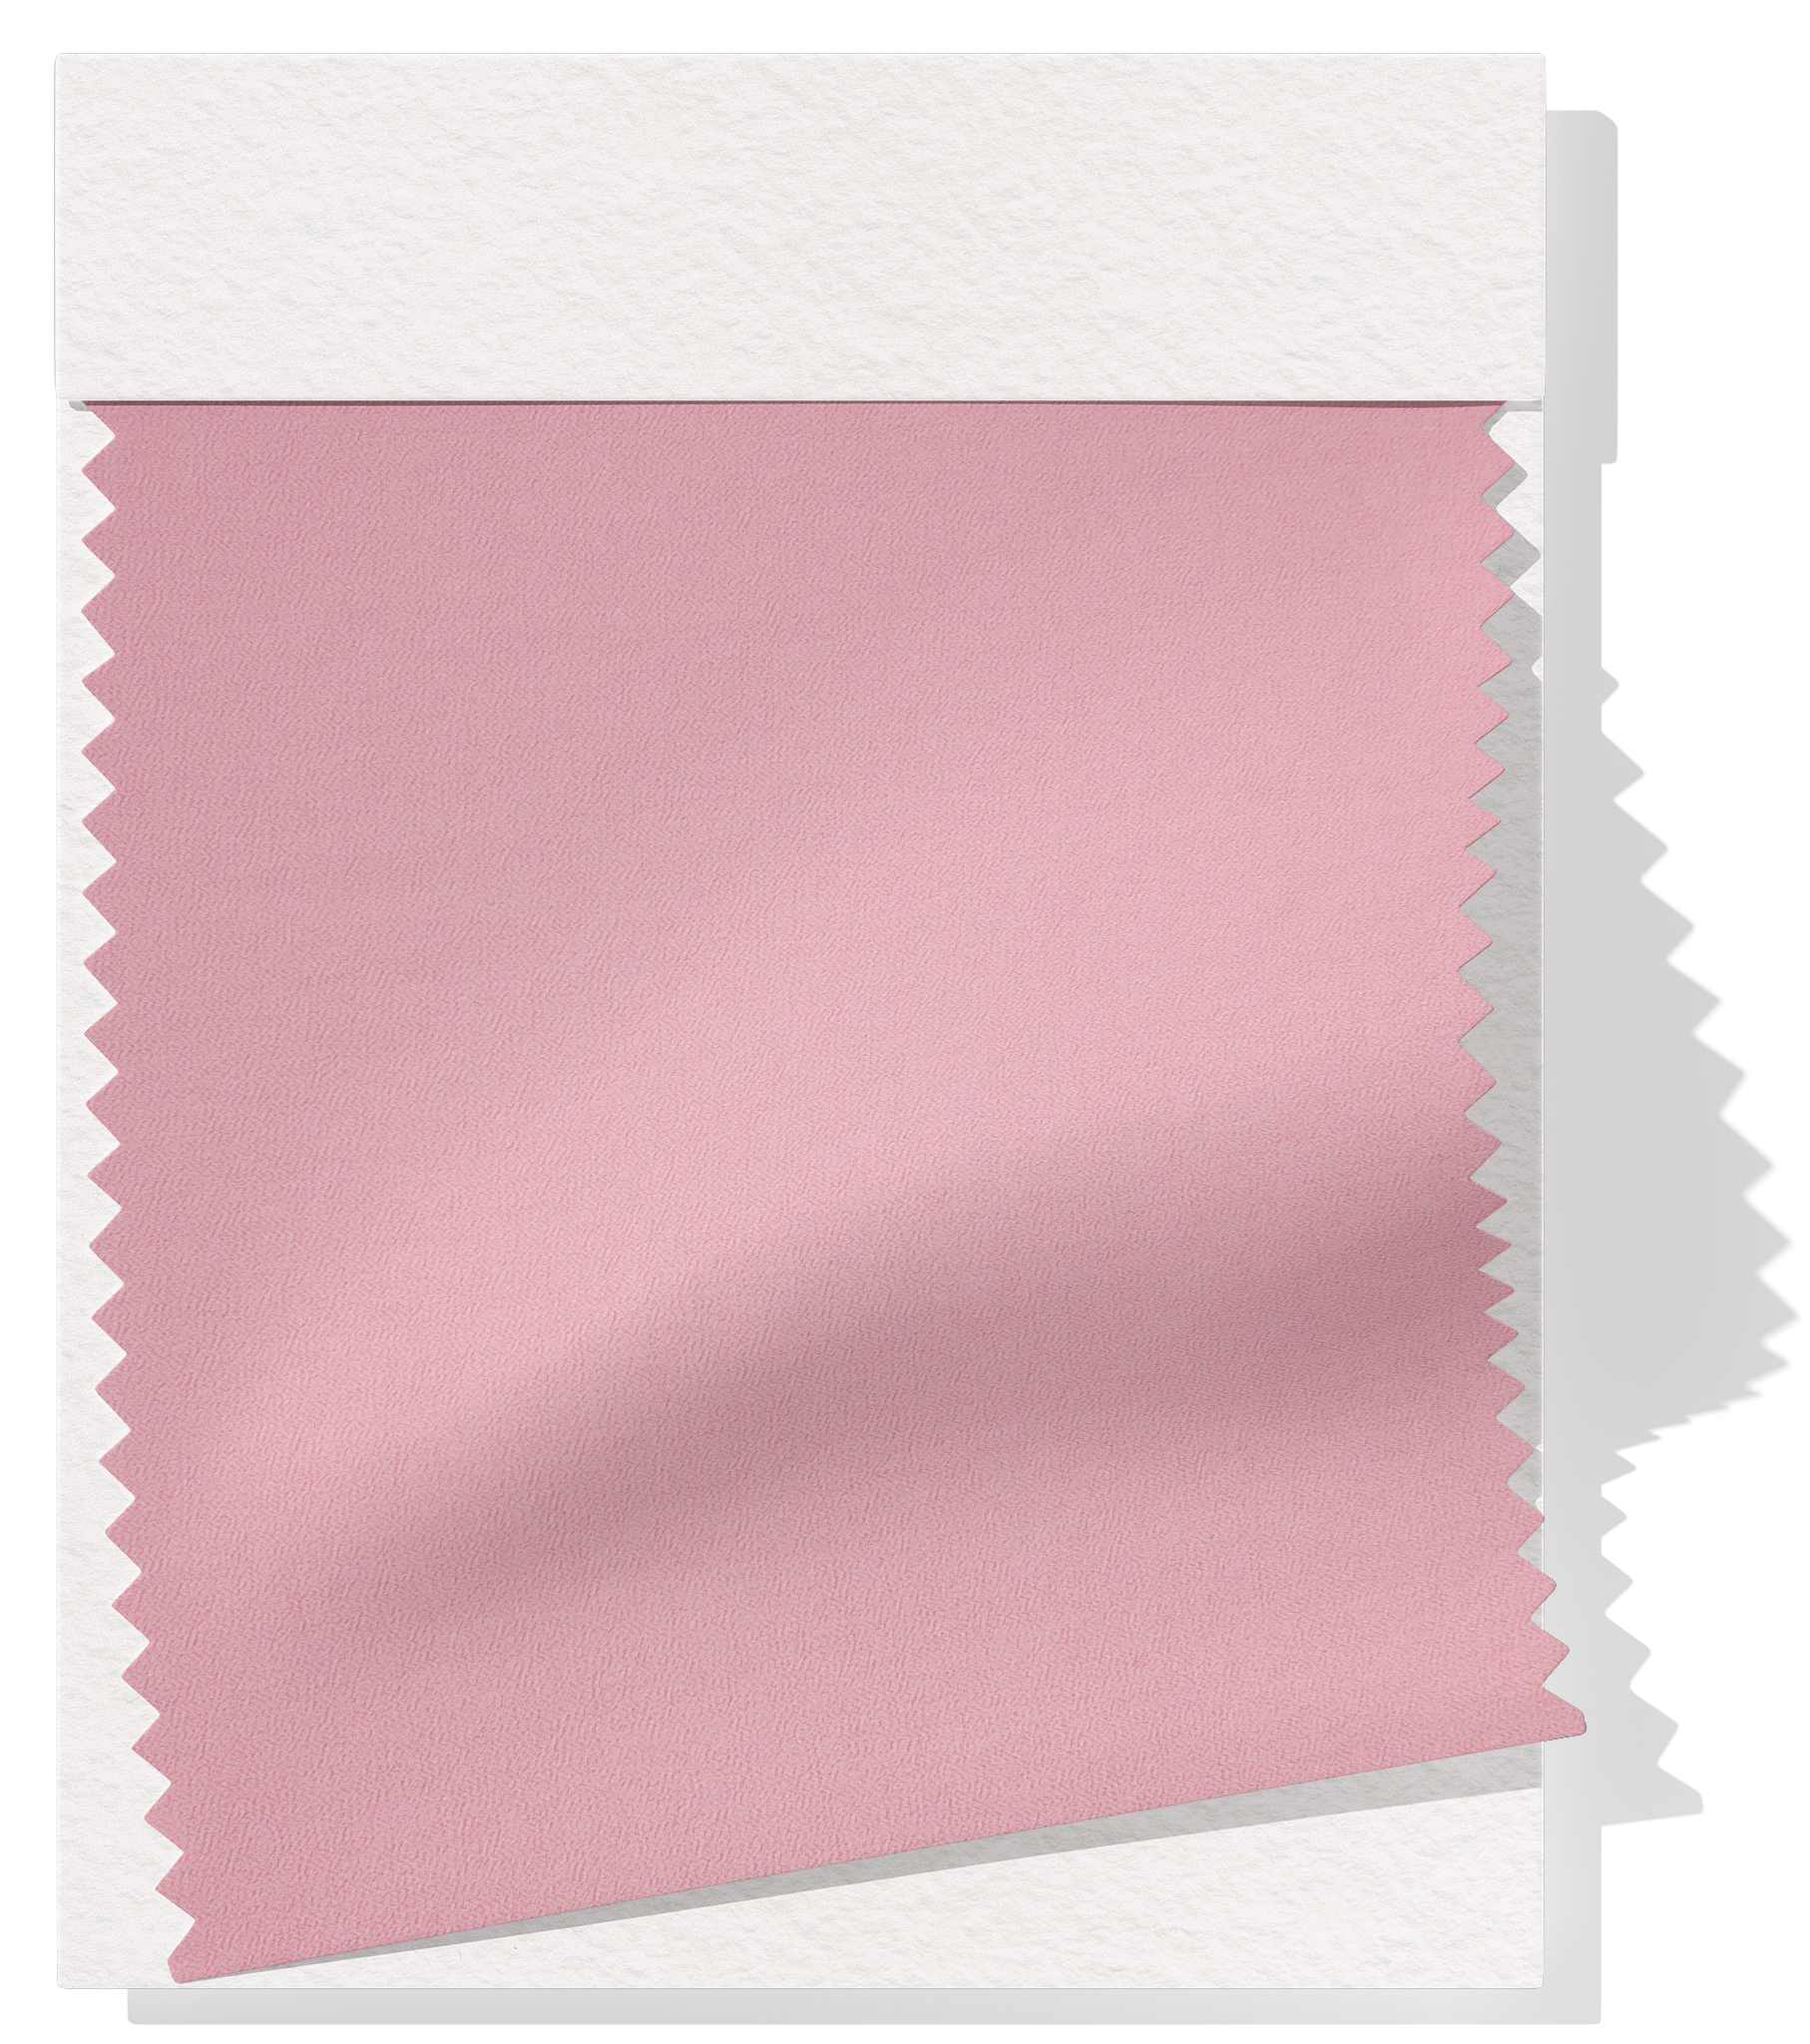 Pearl Chiffon $10.00p/m  - Pink